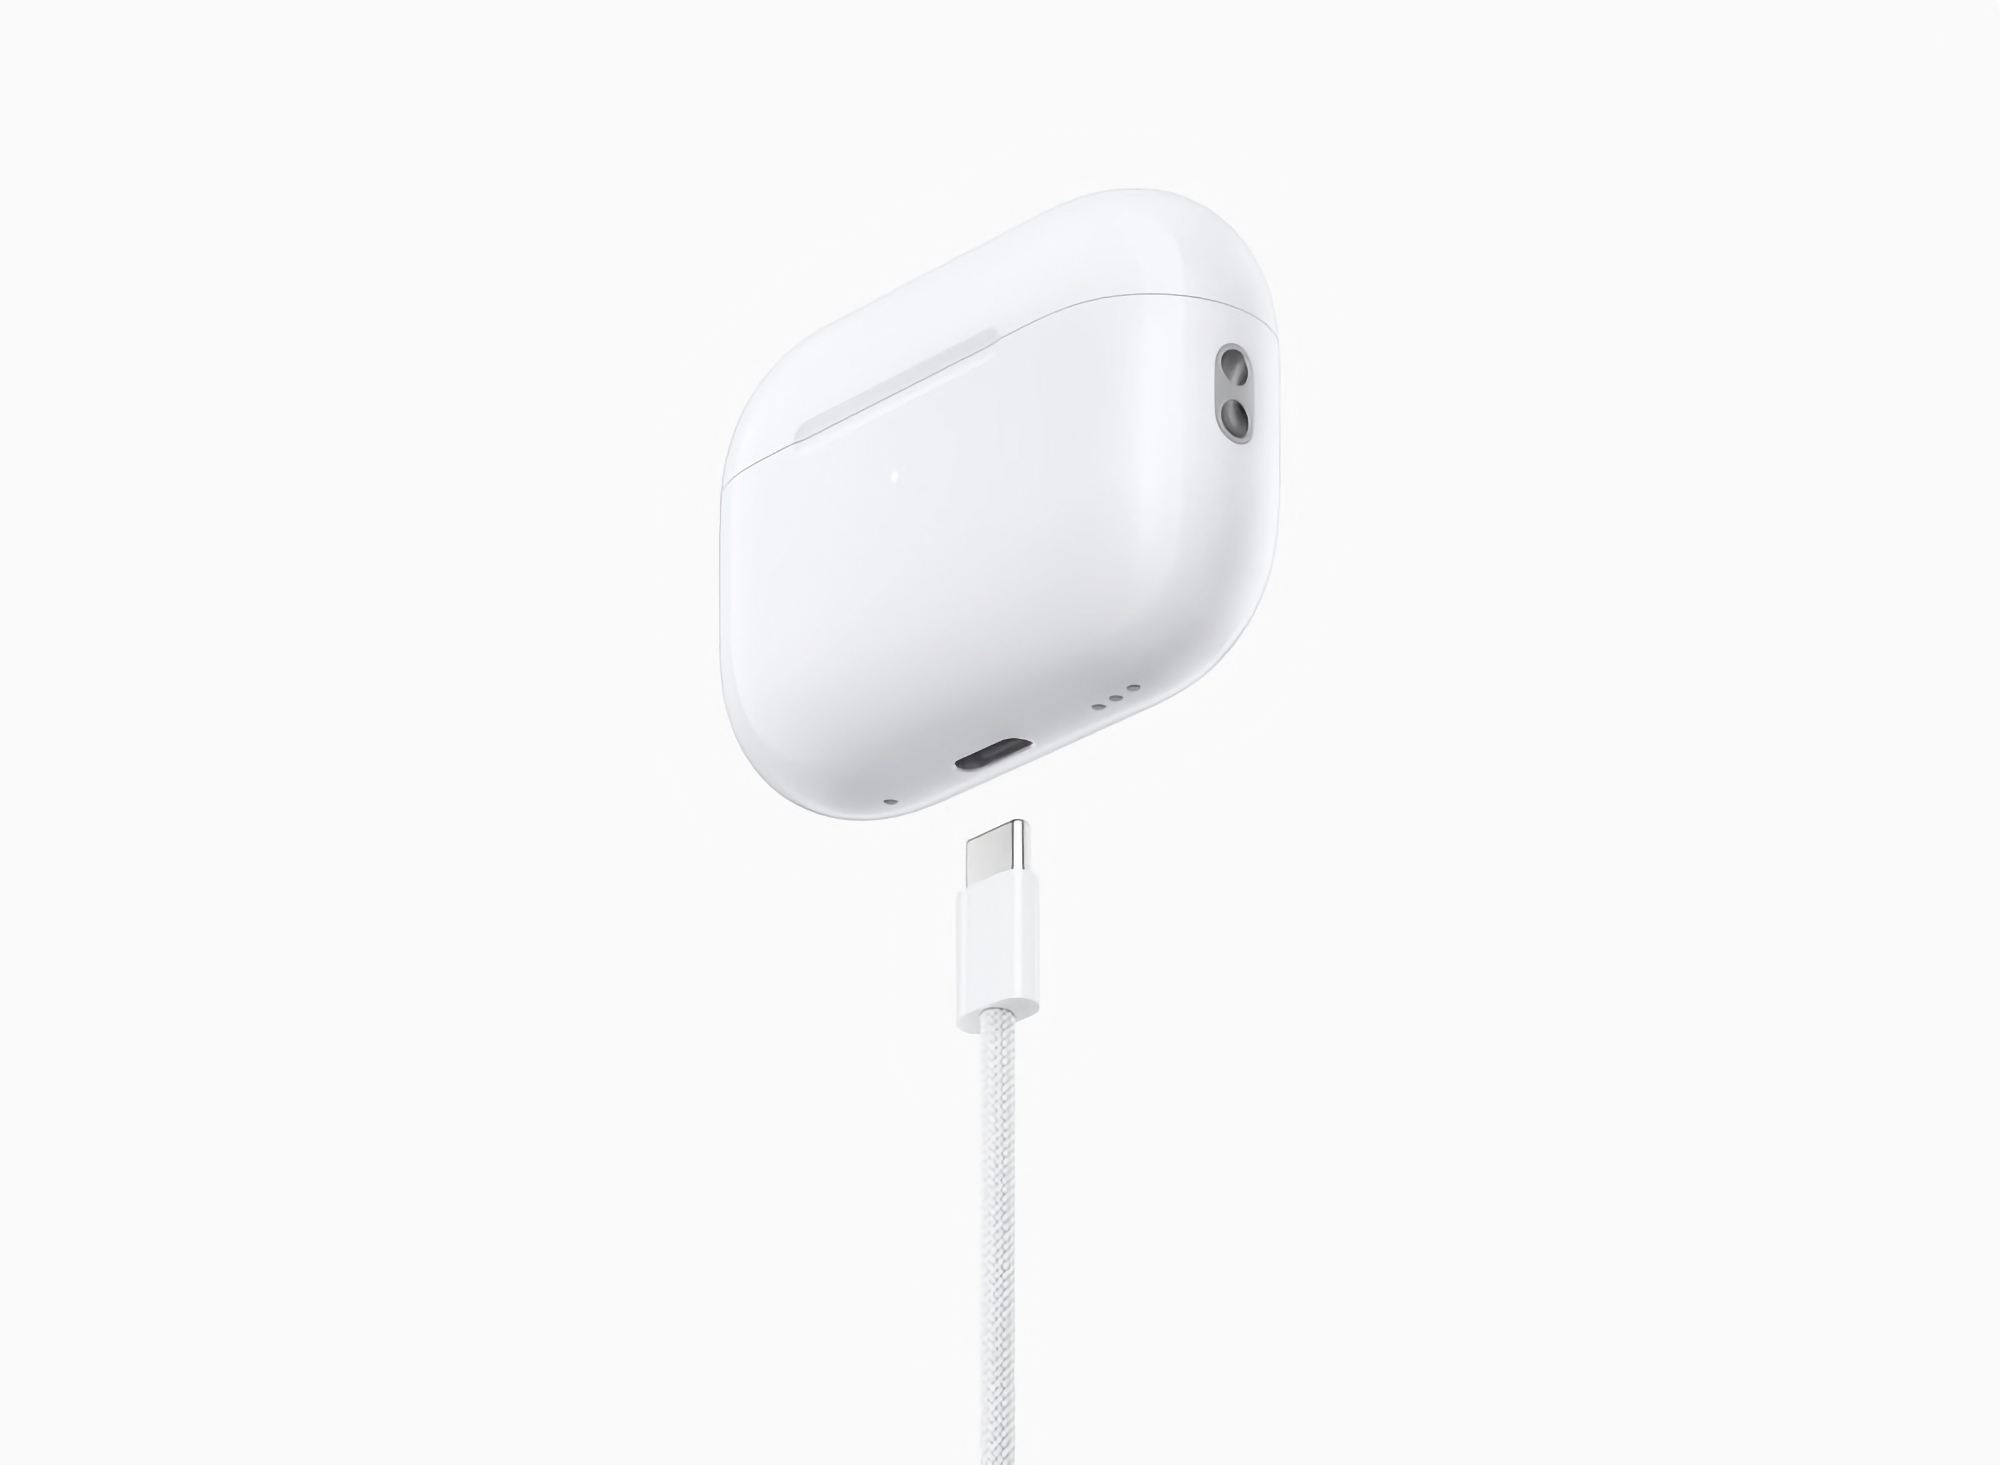 Apple AirPods Pro 2 con USB-C è già disponibile per il pre-ordine su Amazon